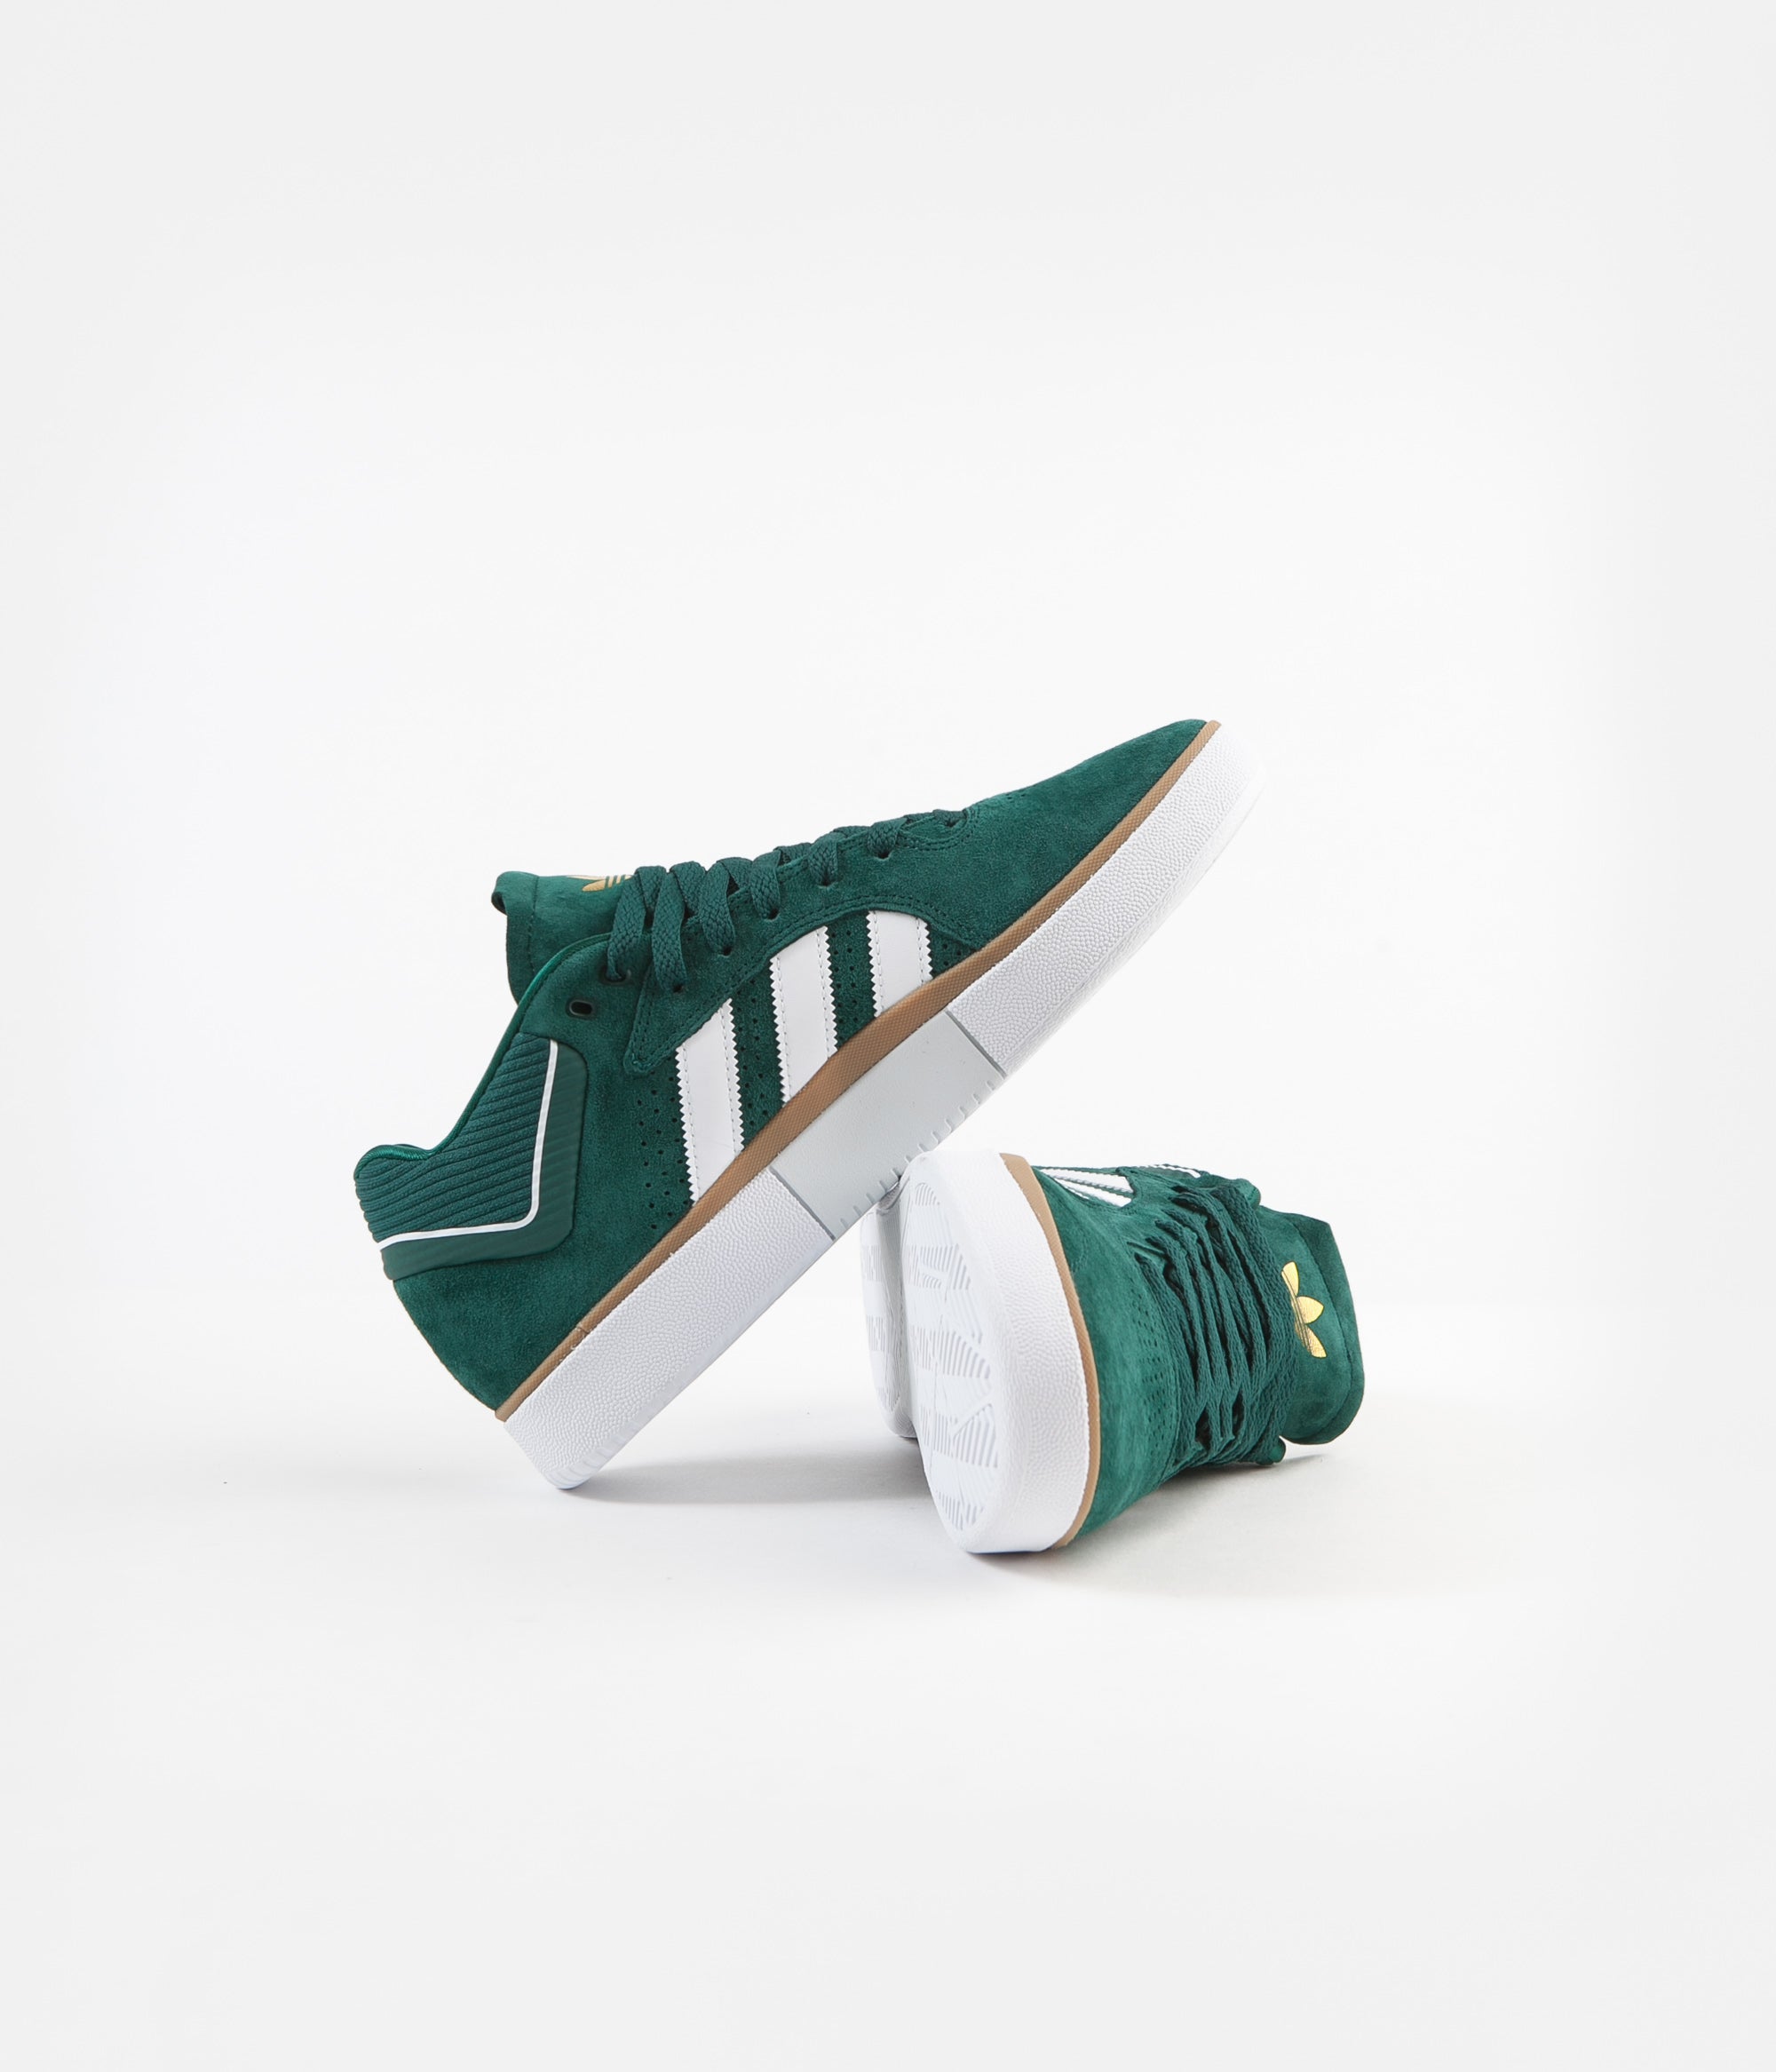 tyshawn adidas green